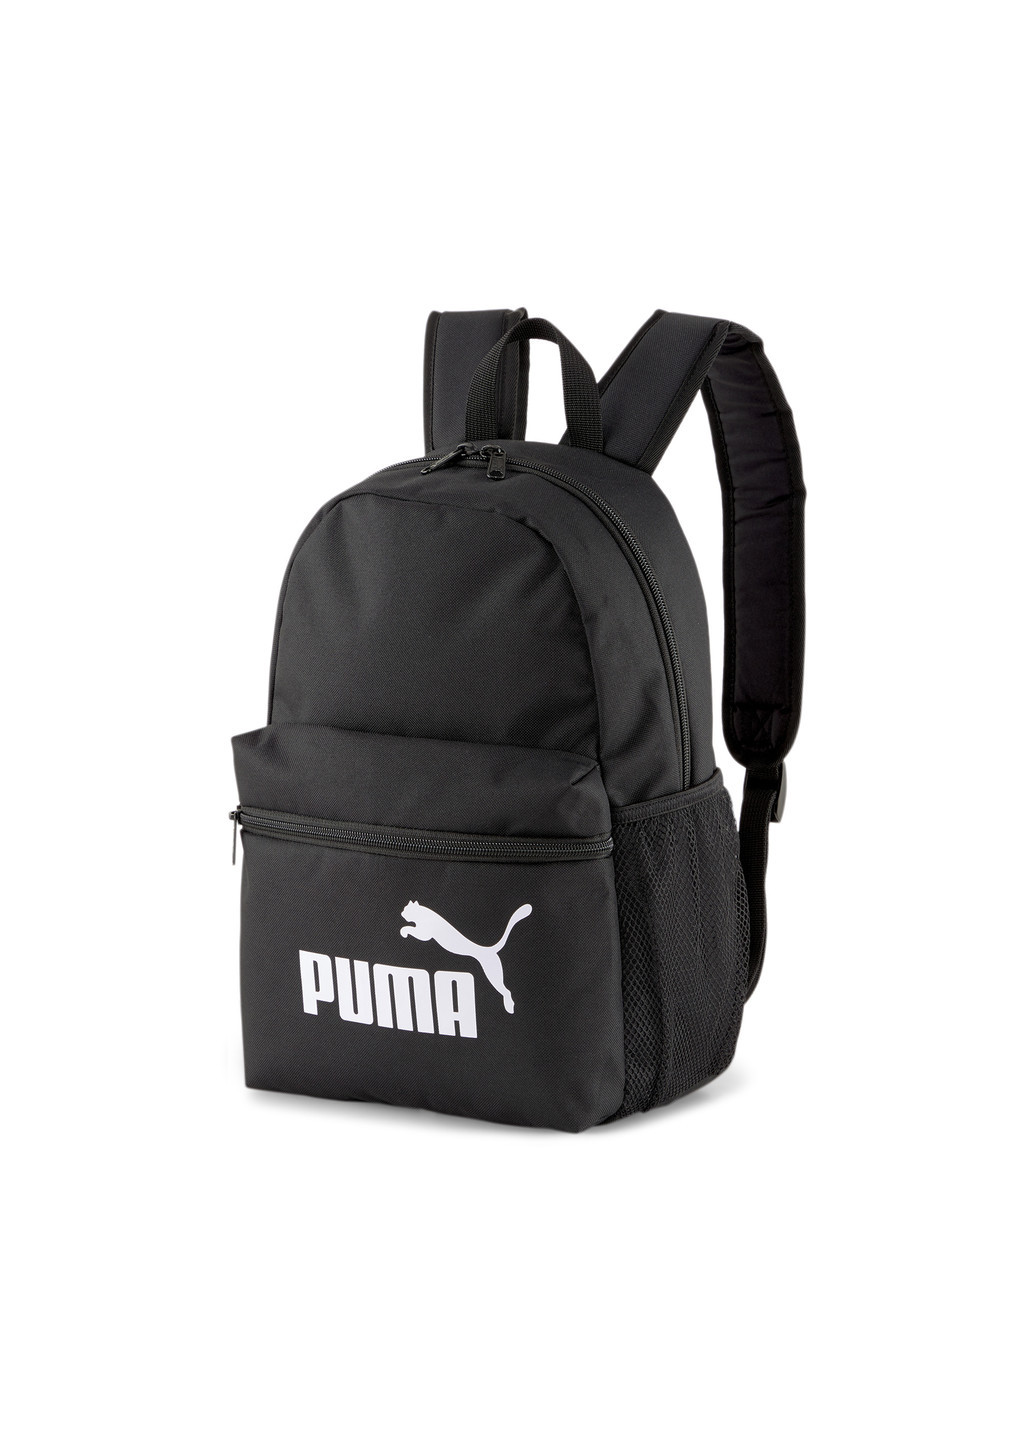 Детский рюкзак Phase Small Youth Backpack Puma однотонный чёрный спортивный